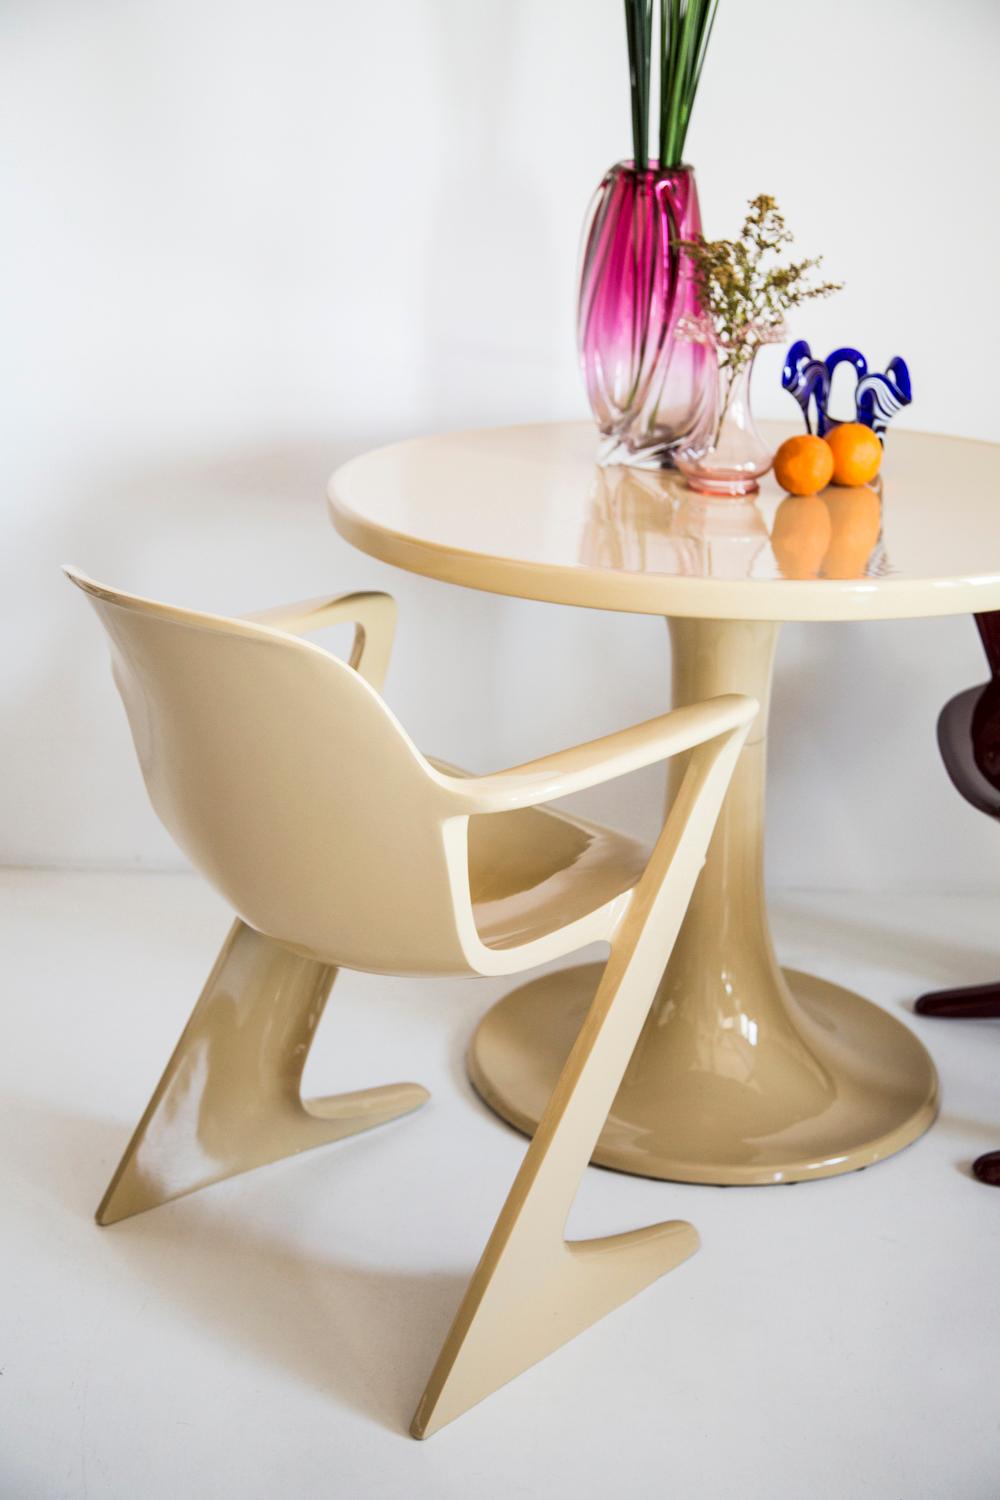 Dieses Modell wird als Z-Stuhl bezeichnet. 1968 in der DDR von Ernst Moeckl und Siegfried Mehl entworfen, deutsche Version des Panton-Stuhls. Auch Känguru-Stuhl oder Variopur-Stuhl genannt. Produziert in Ostdeutschland.

Der z.stuhl, entworfen von